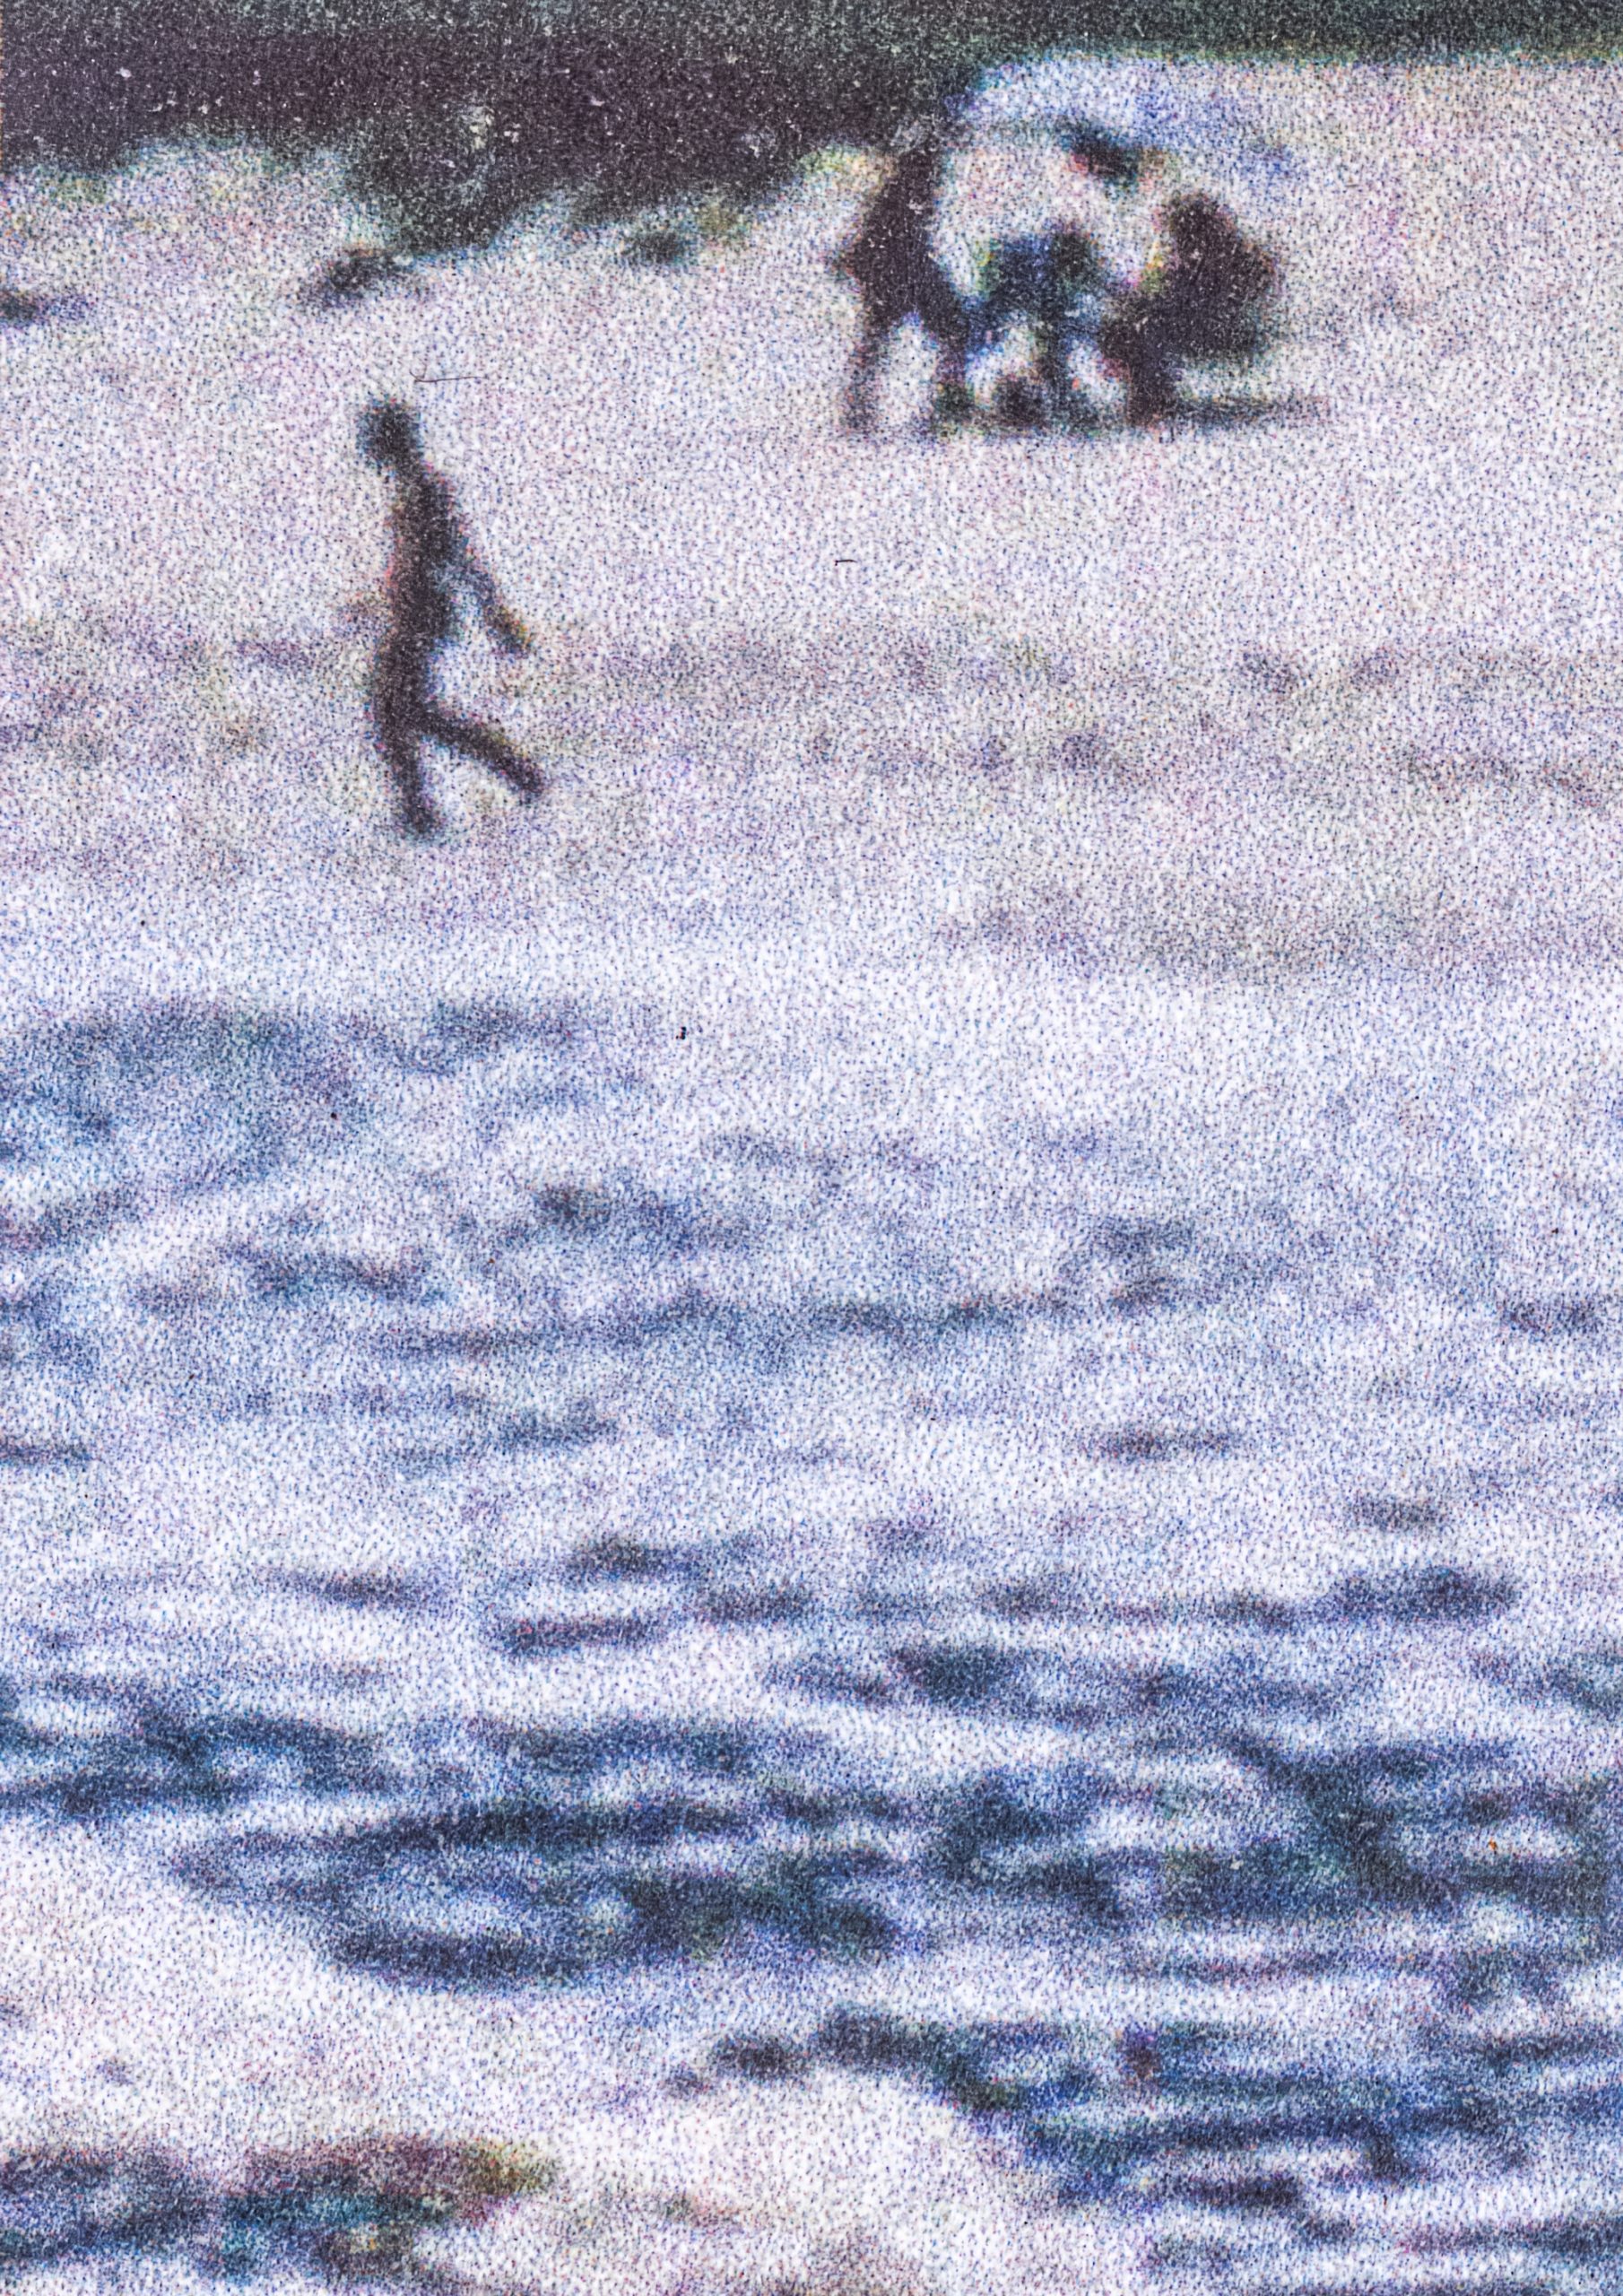 Pessoa caminha na praia em uma fotografia pontilhada.